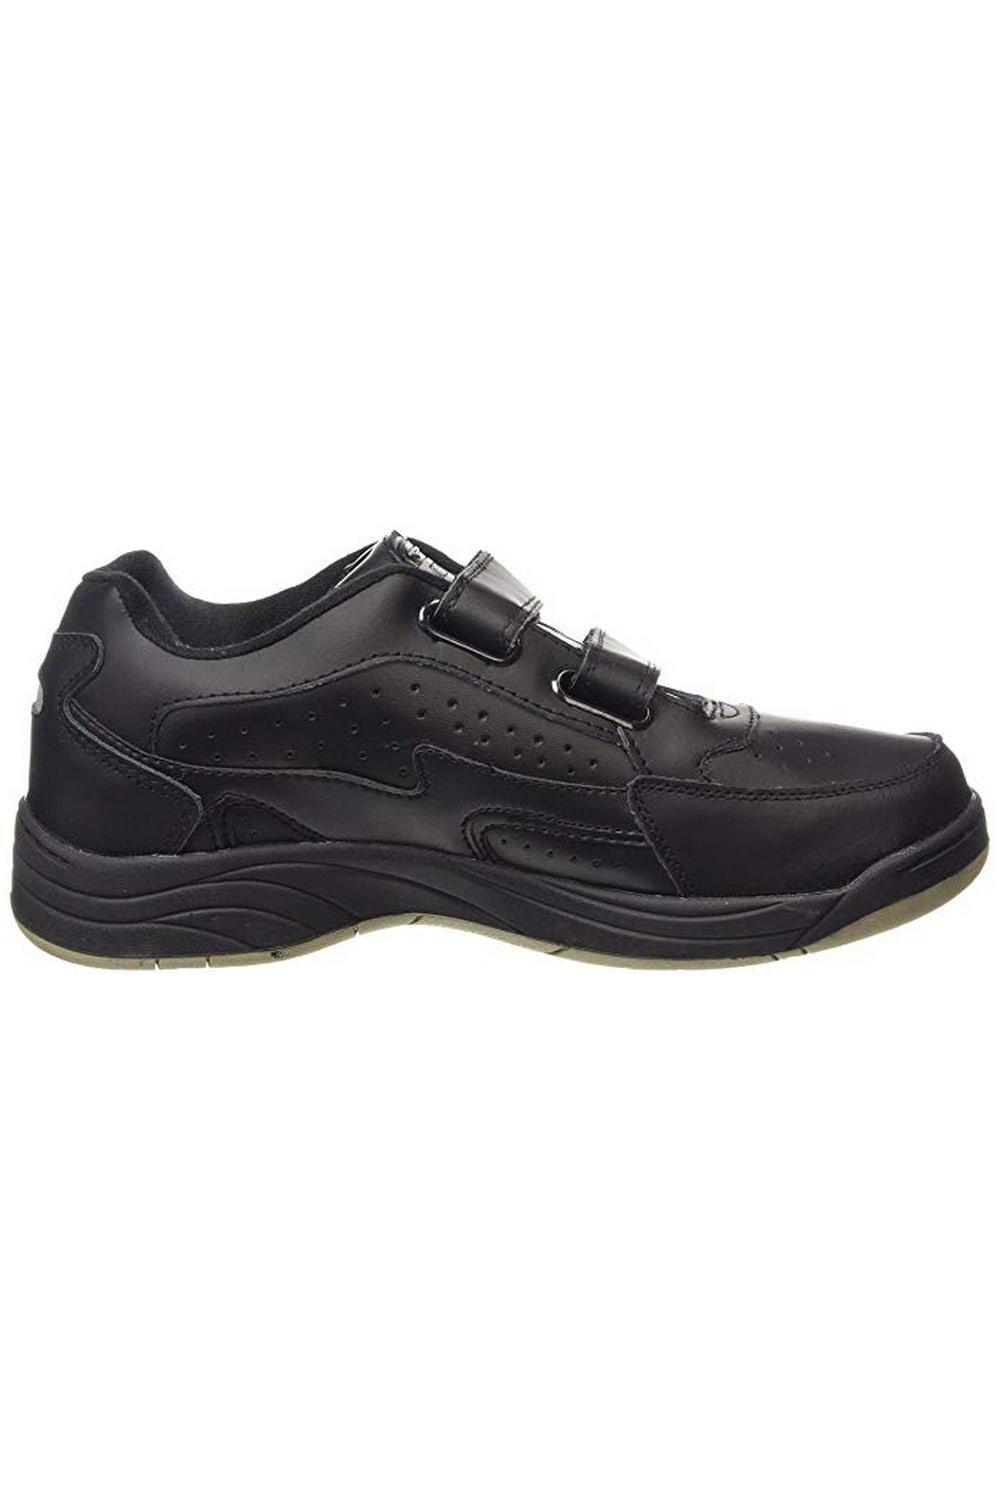 Кроссовки Arizona Touch Fastening Trainers Dek, черный низкие кроссовки touch fastening trainers next цвет black patent